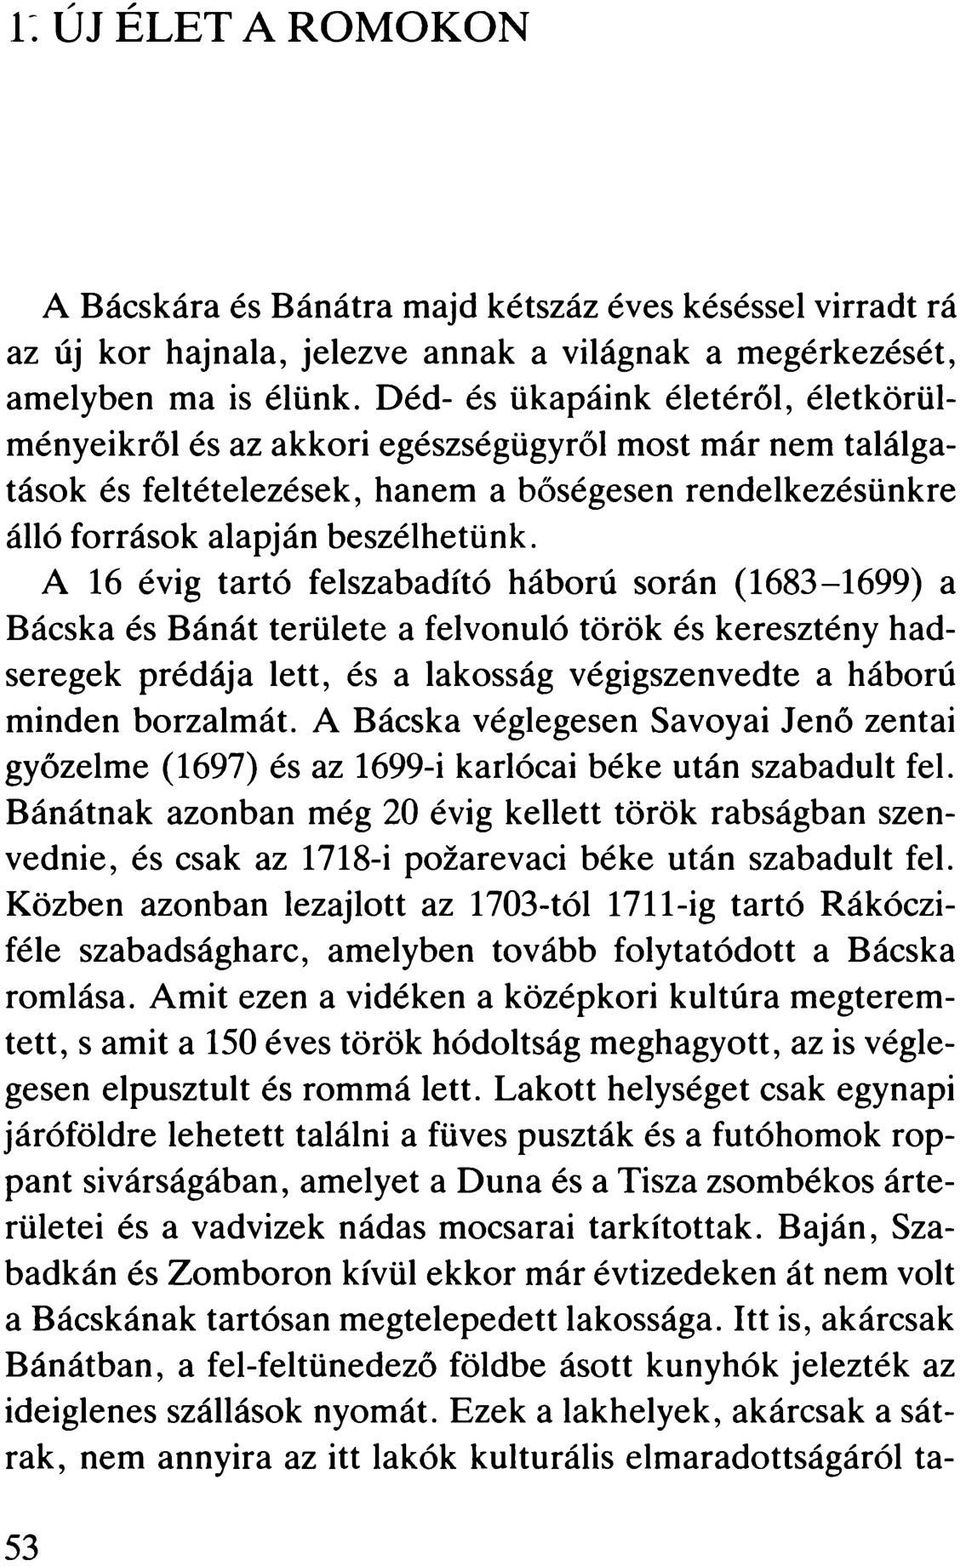 A 16 évig tartó felszabadító háború során (1683-1699) a Bácska és Bánát területe a felvonuló török és keresztény hadseregek prédája lett, és a lakosság végigszenvedte a háború minden borzalmát.